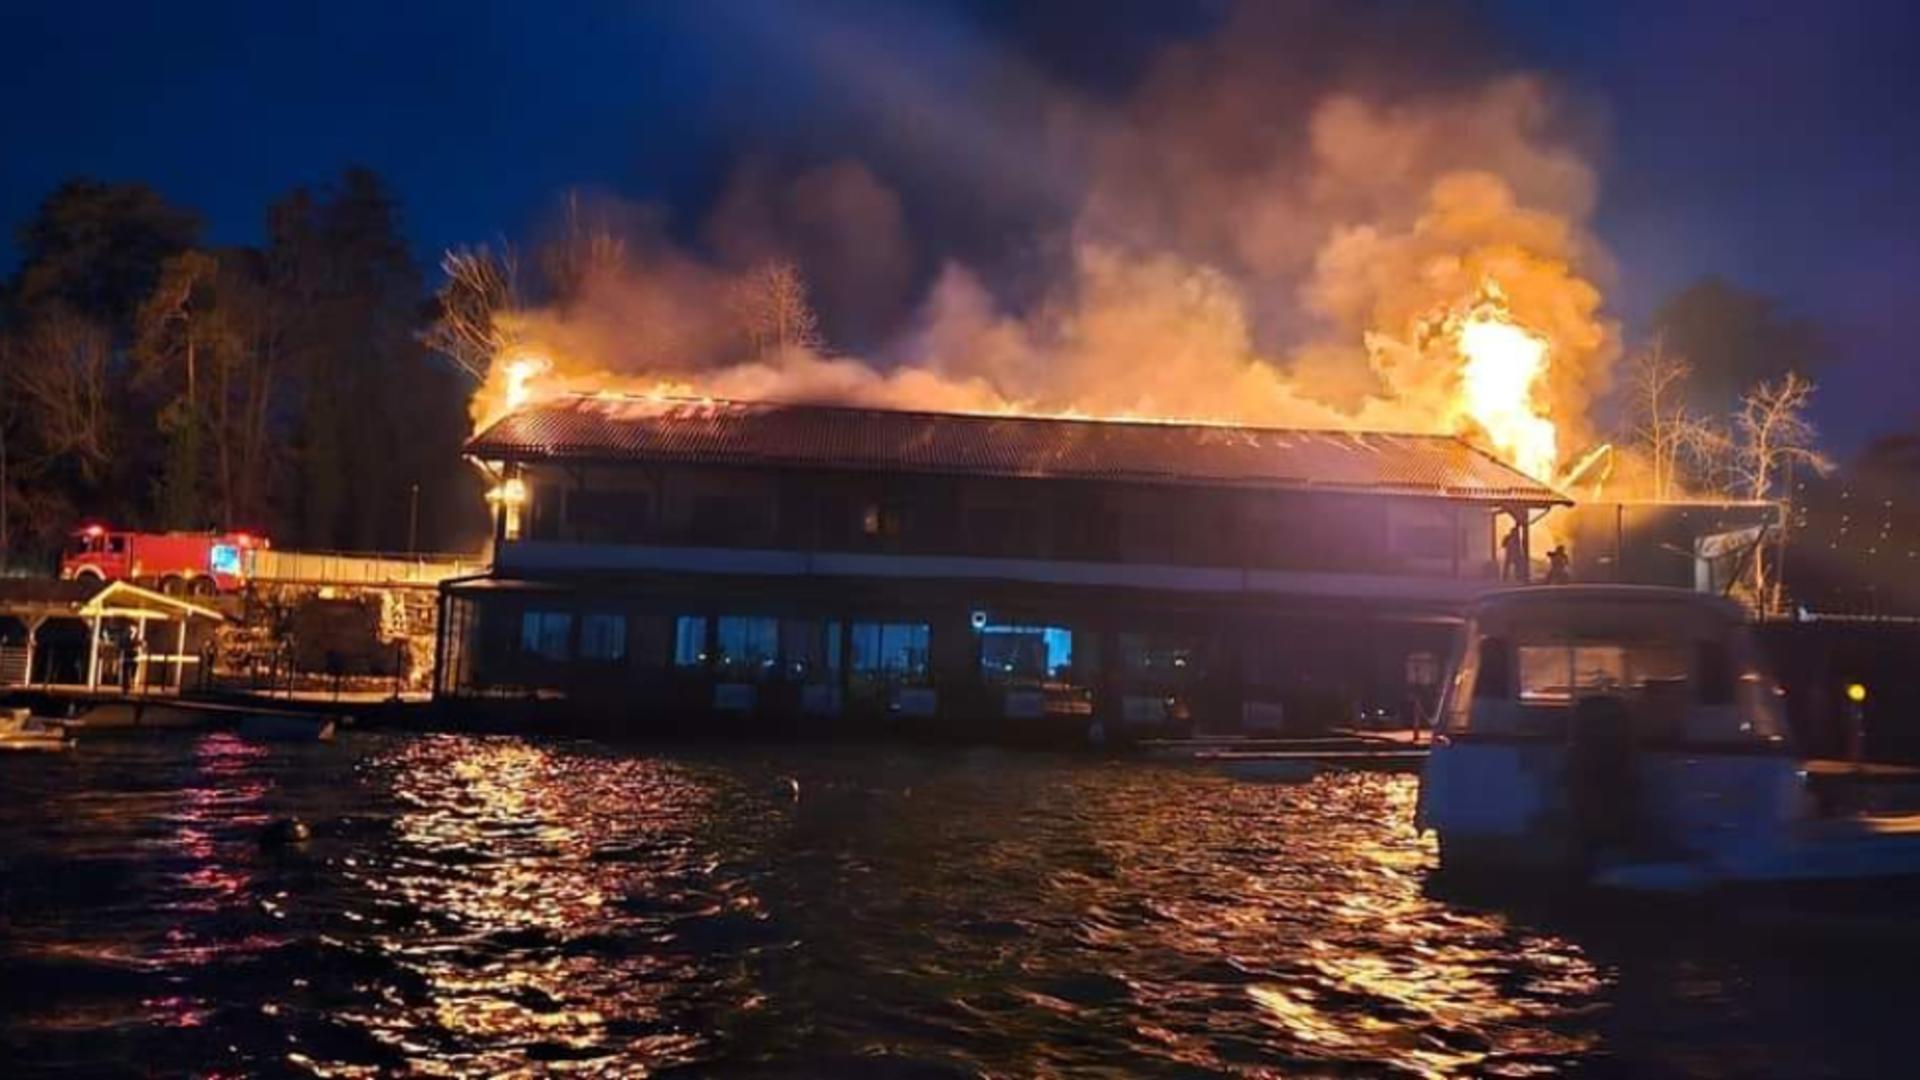 Incendiu la Taverna Racilor din Snagov: focul se manifestă violent pe o suprafață de 500 mp – Pericol de propagare spre pădure